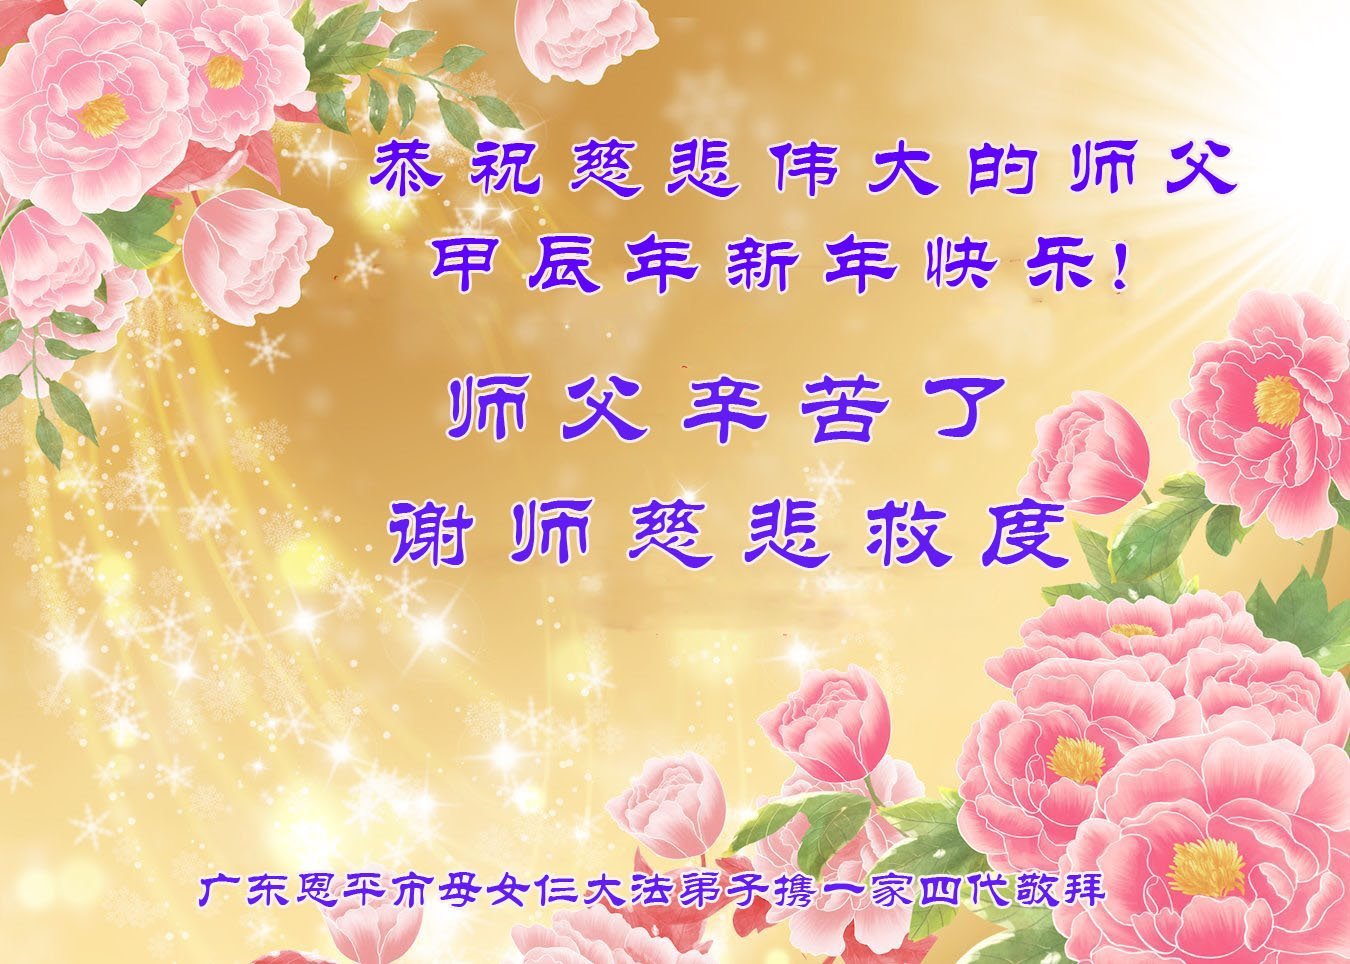 Image for article Les pratiquants de Falun Dafa de la ville de Shijiazhuang souhaitent respectueusement au vénérable Maître Li Hongzhi un bon Nouvel An chinois ! (21 vœux)